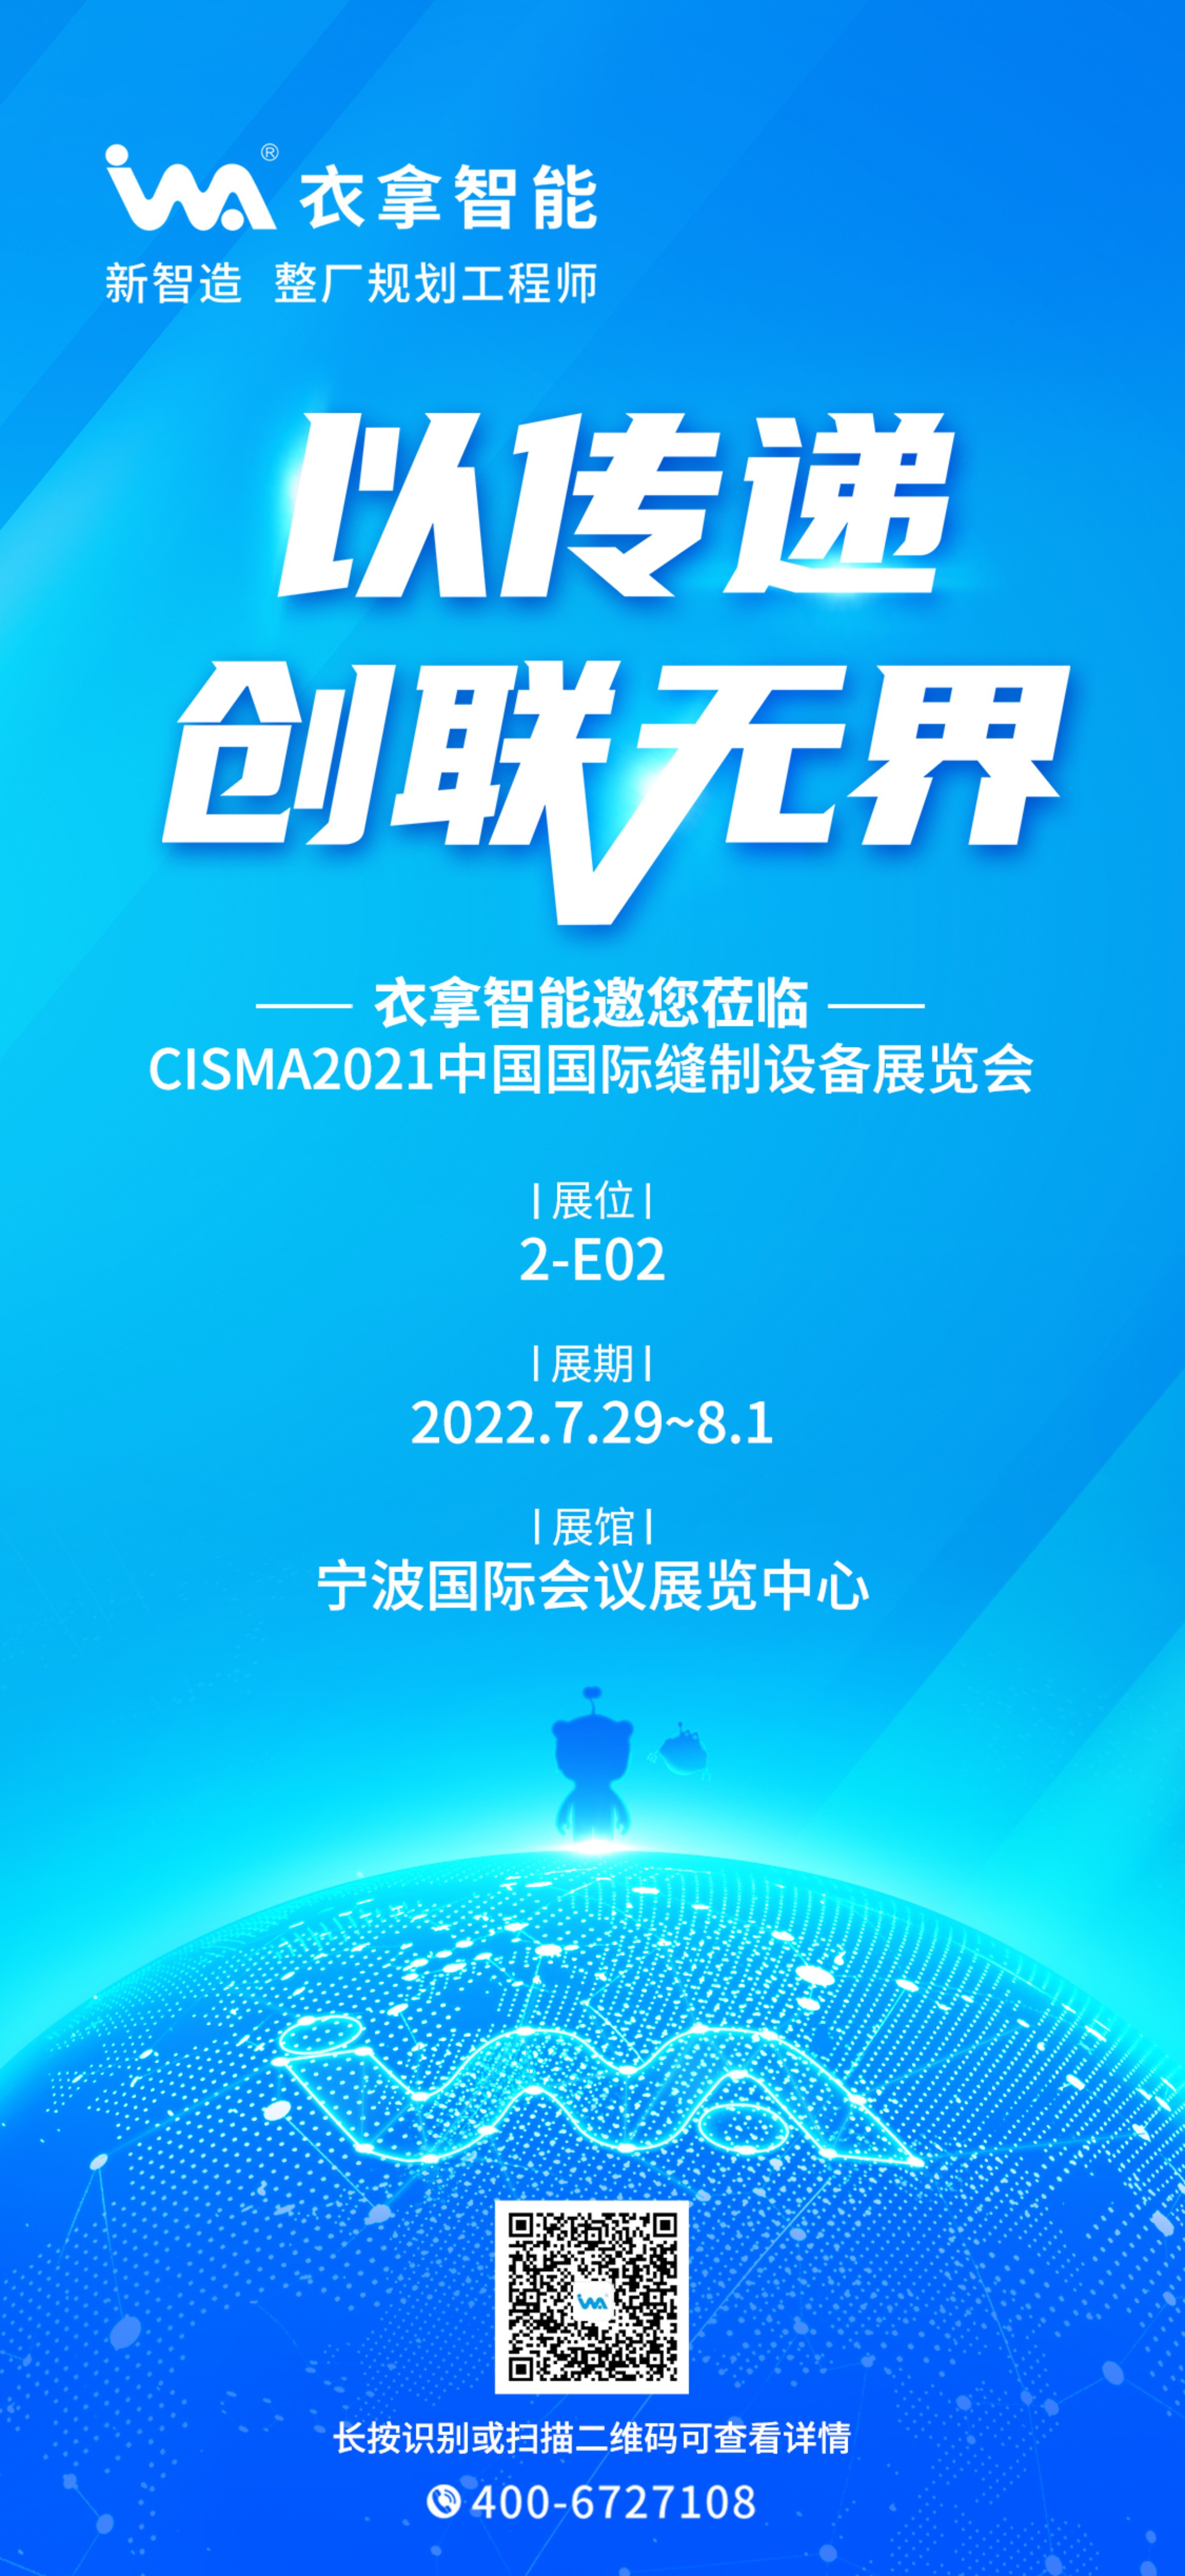 银河集团9873.cσm | 与您相约CISMA2021中国国际缝制设备展览会